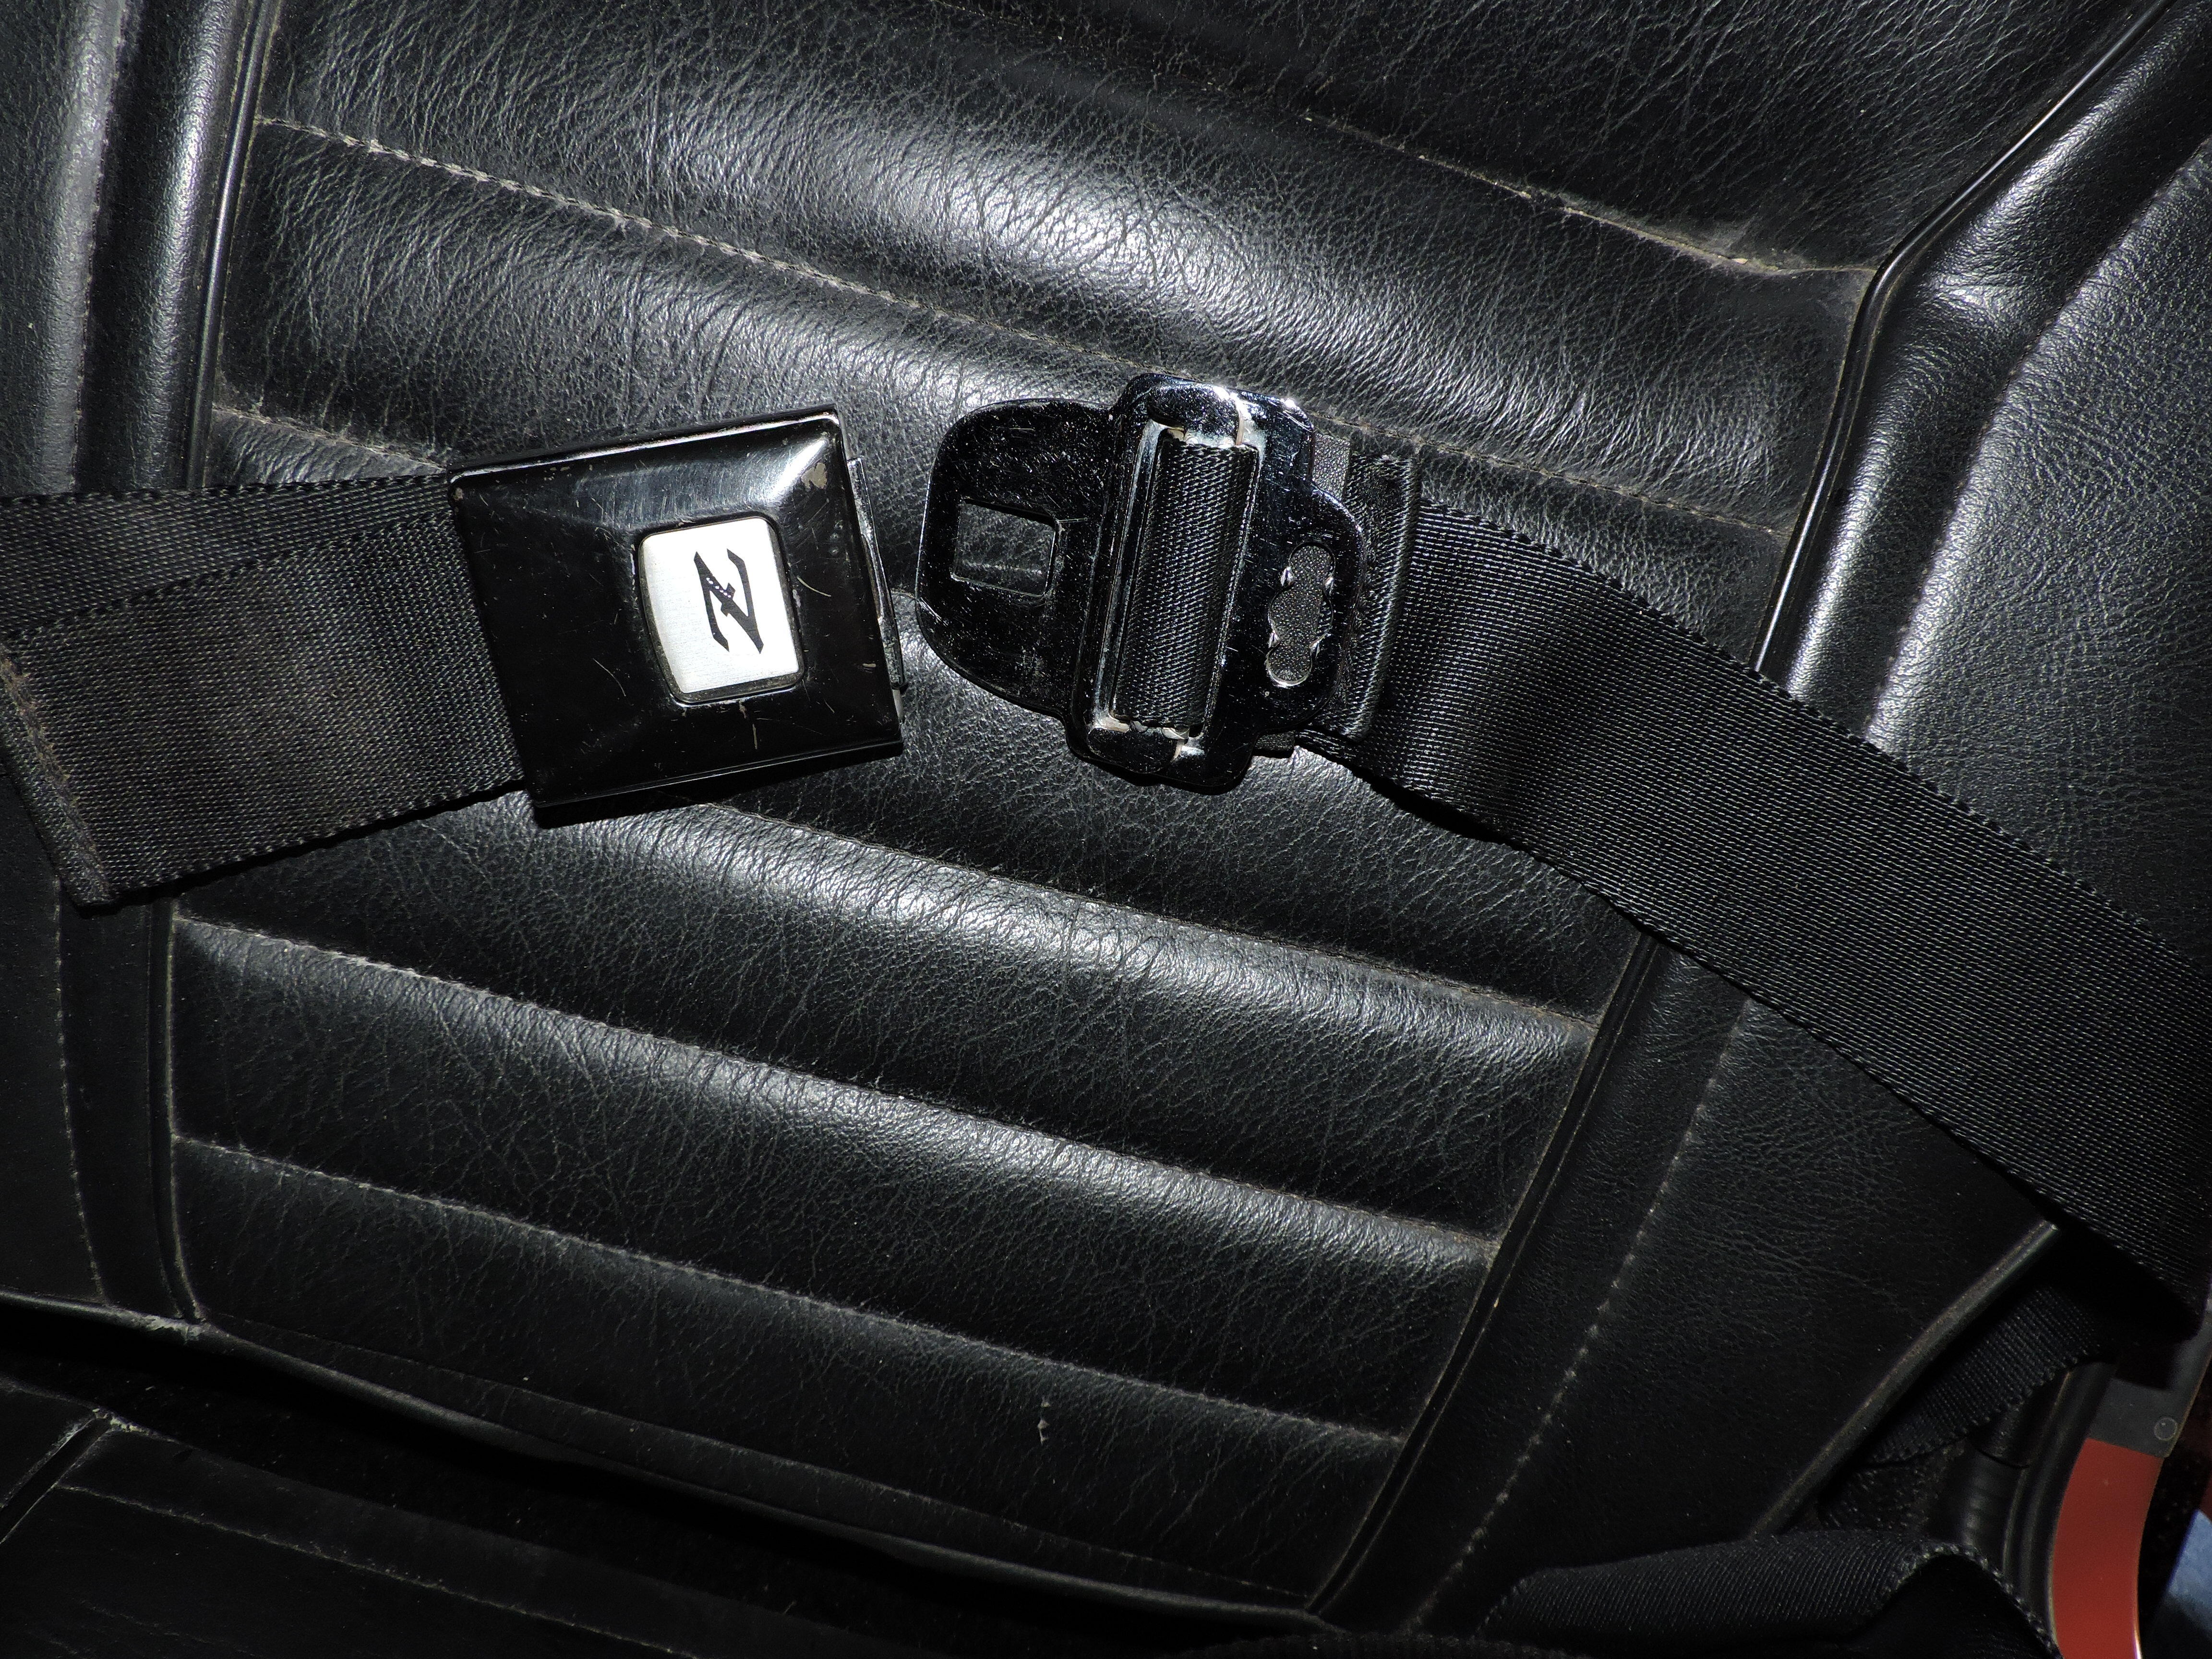 240Z seat belt buckle